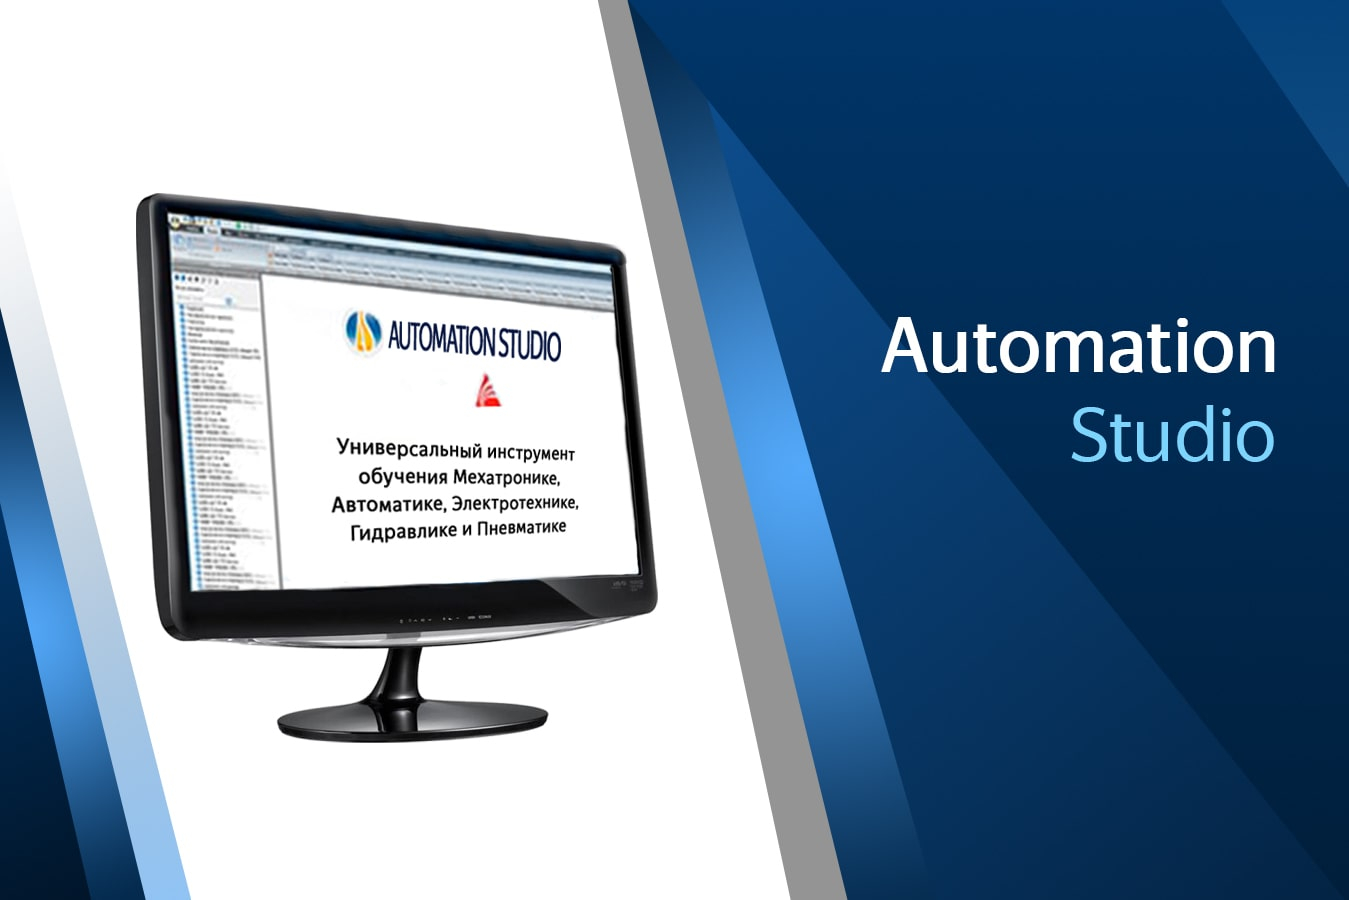 Automation Studio — обучение специалистов посредством моделирования